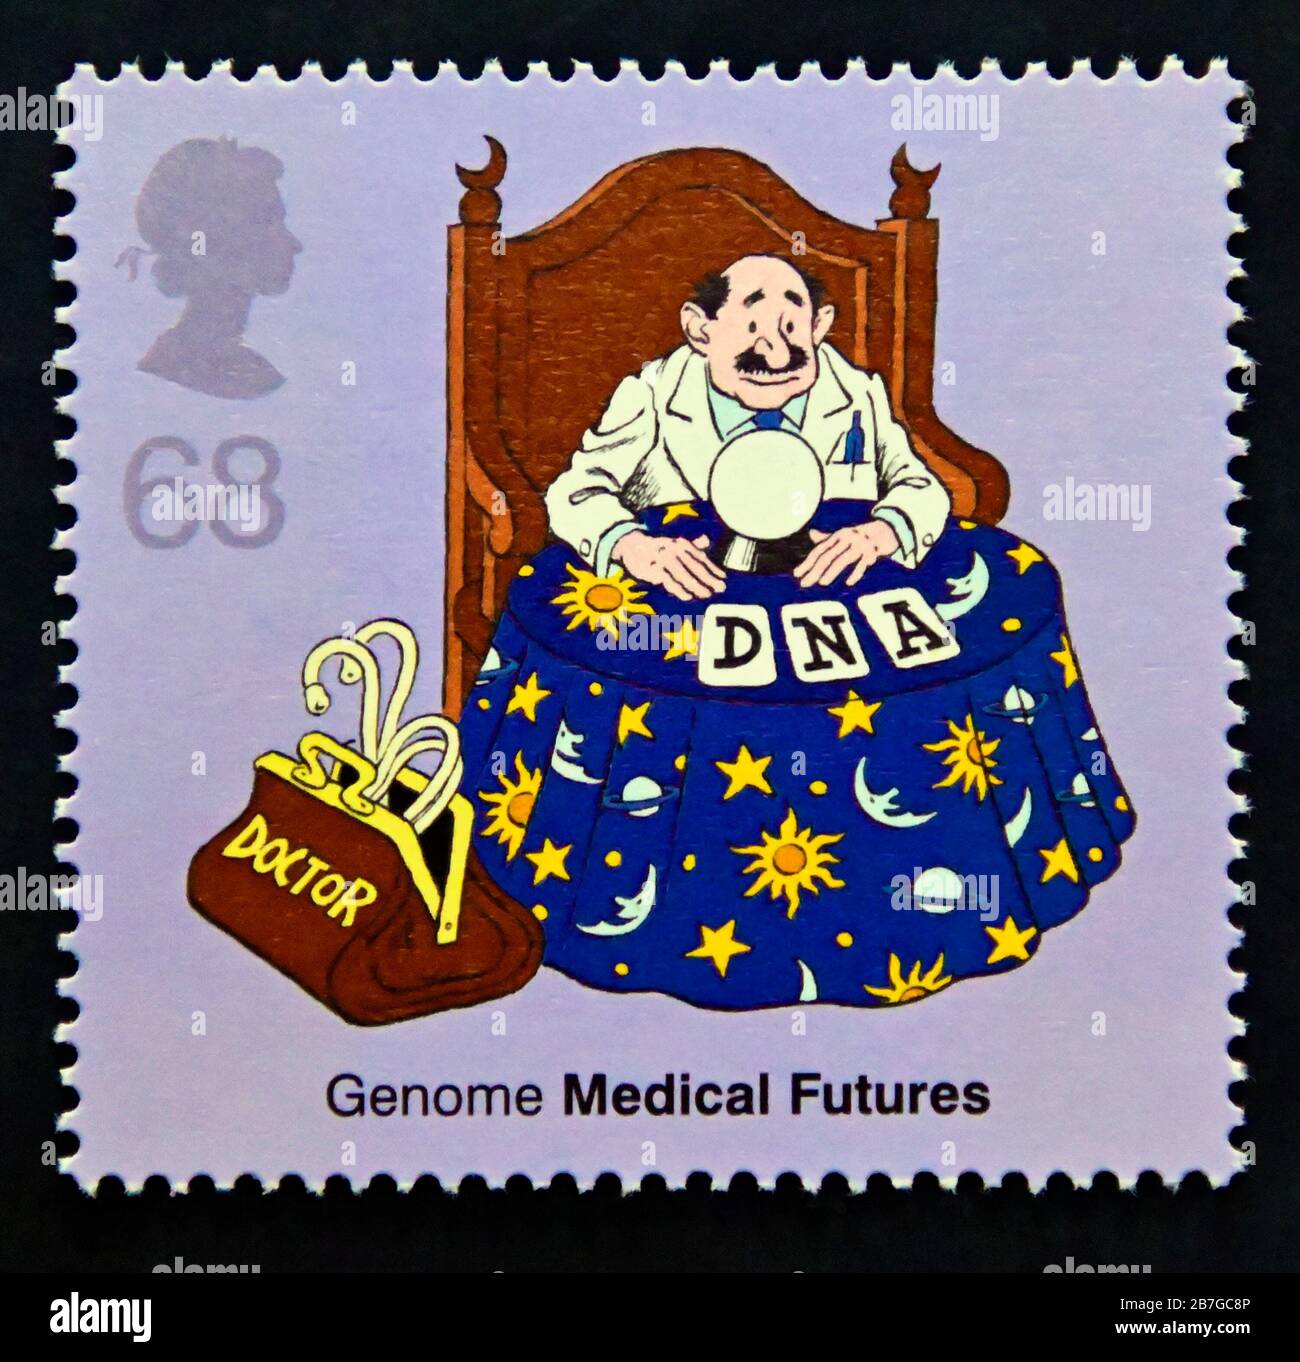 Timbre-poste. Grande-Bretagne. La reine Elizabeth II 50ème anniversaire de la découverte de l'ADN. Boule de cristal de génome. 68 p 2003. Banque D'Images